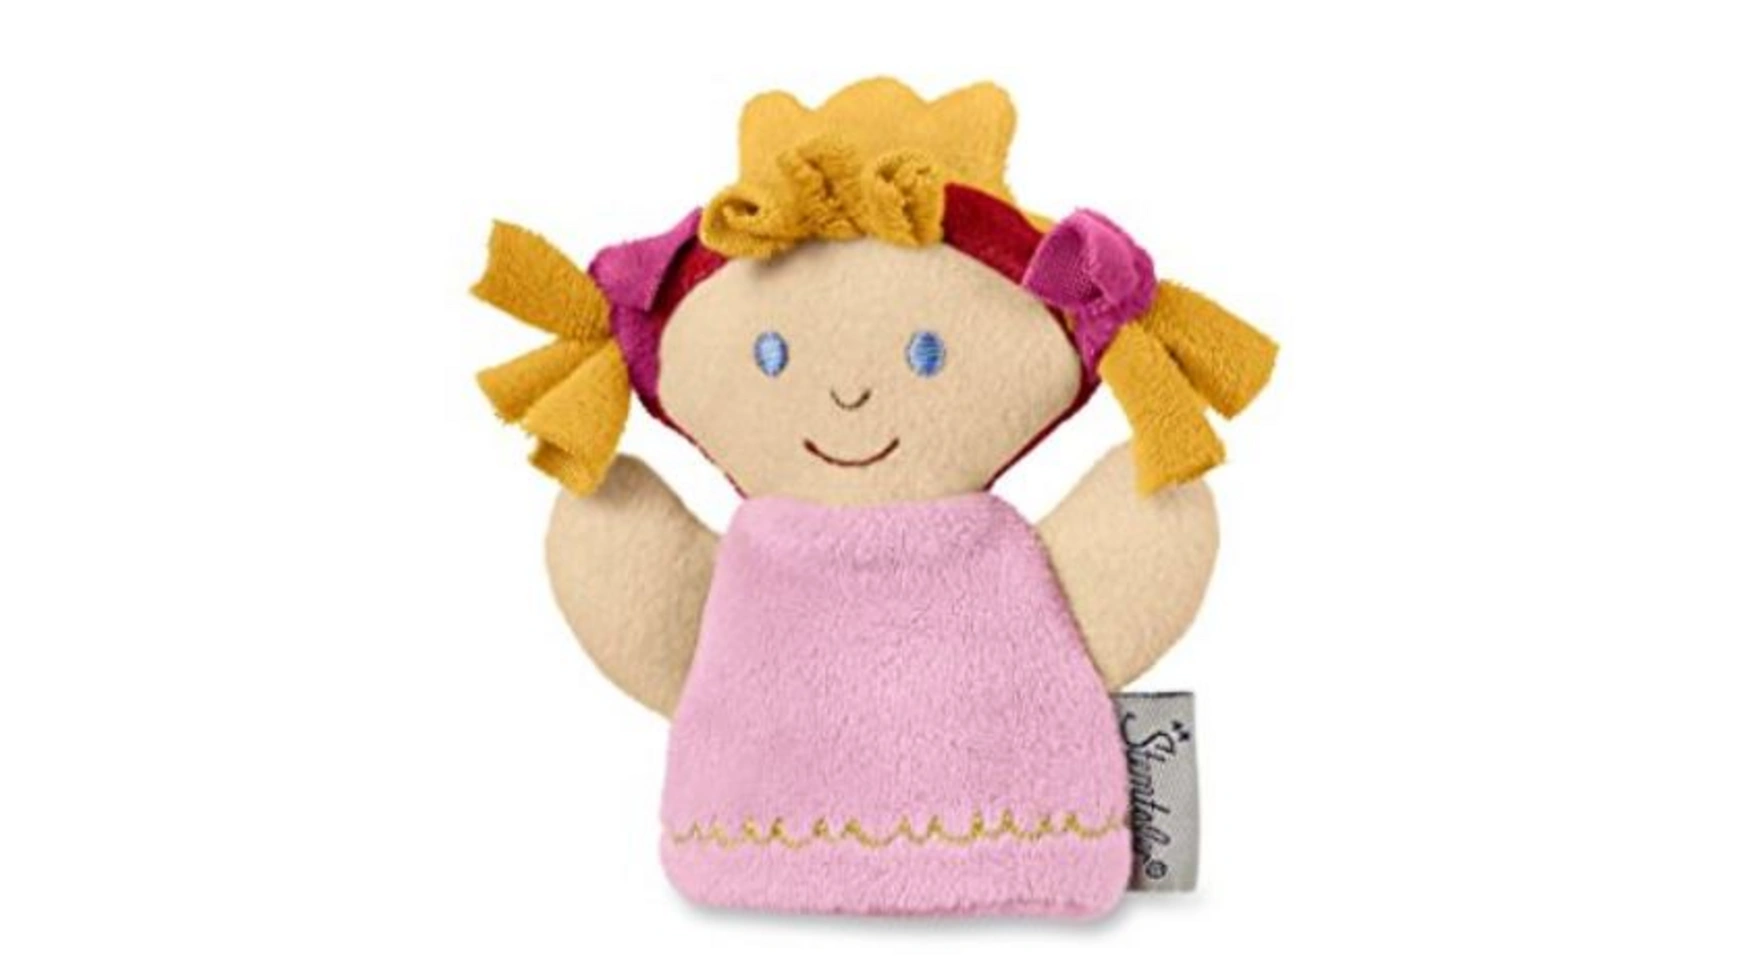 Пальчиковая кукла-принцесса Sterntaler пальчиковая кукла маленький монстр пазл ручной мультяшный животный плюшевая кукла пальчиковая кукла кинотеатр детская игрушка на хэлл